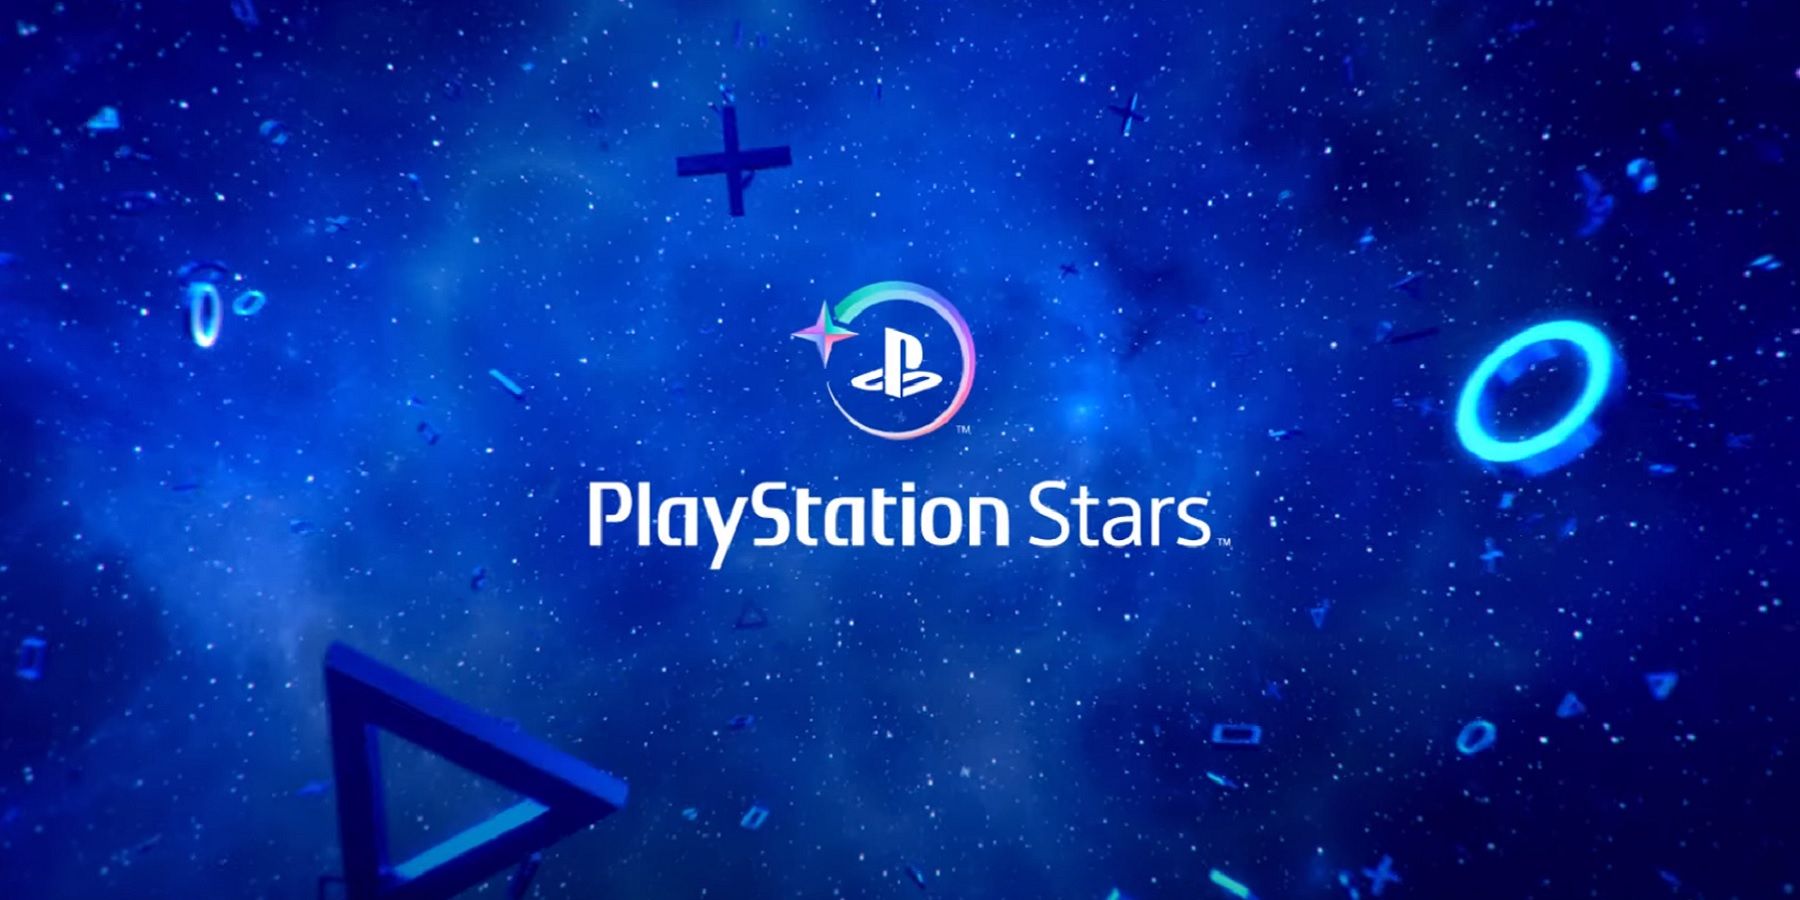 playstation stars logo